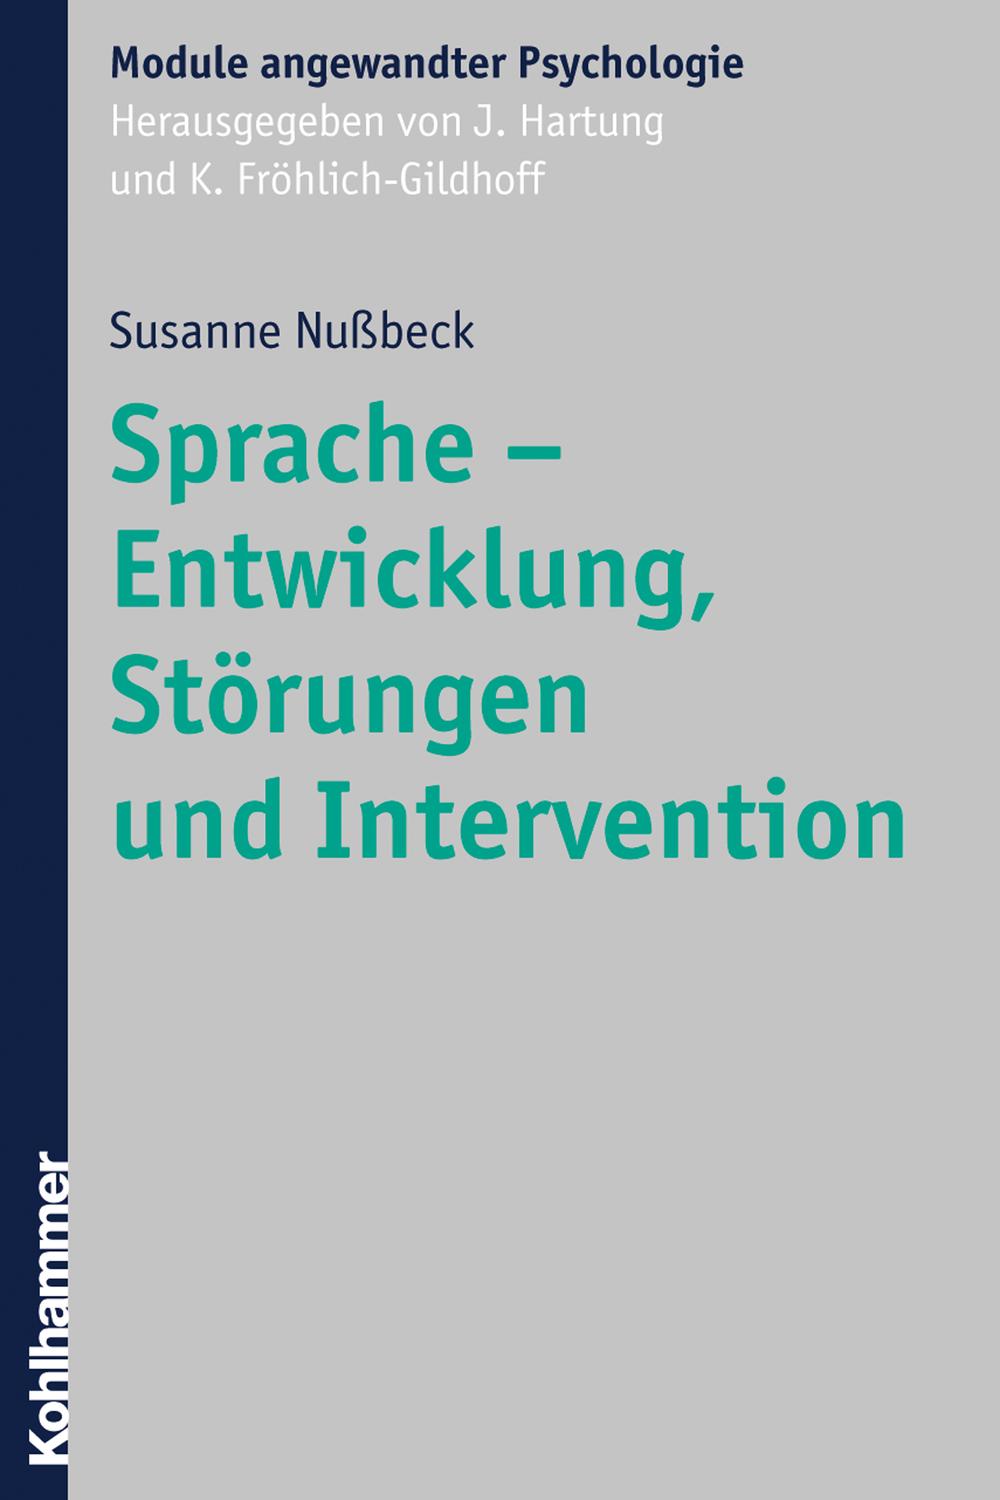 Sprache - Entwicklung, Störungen und Intervention - Susanne Nußbeck, Johanna Hartung, Klaus Fröhlich-Gildhoff